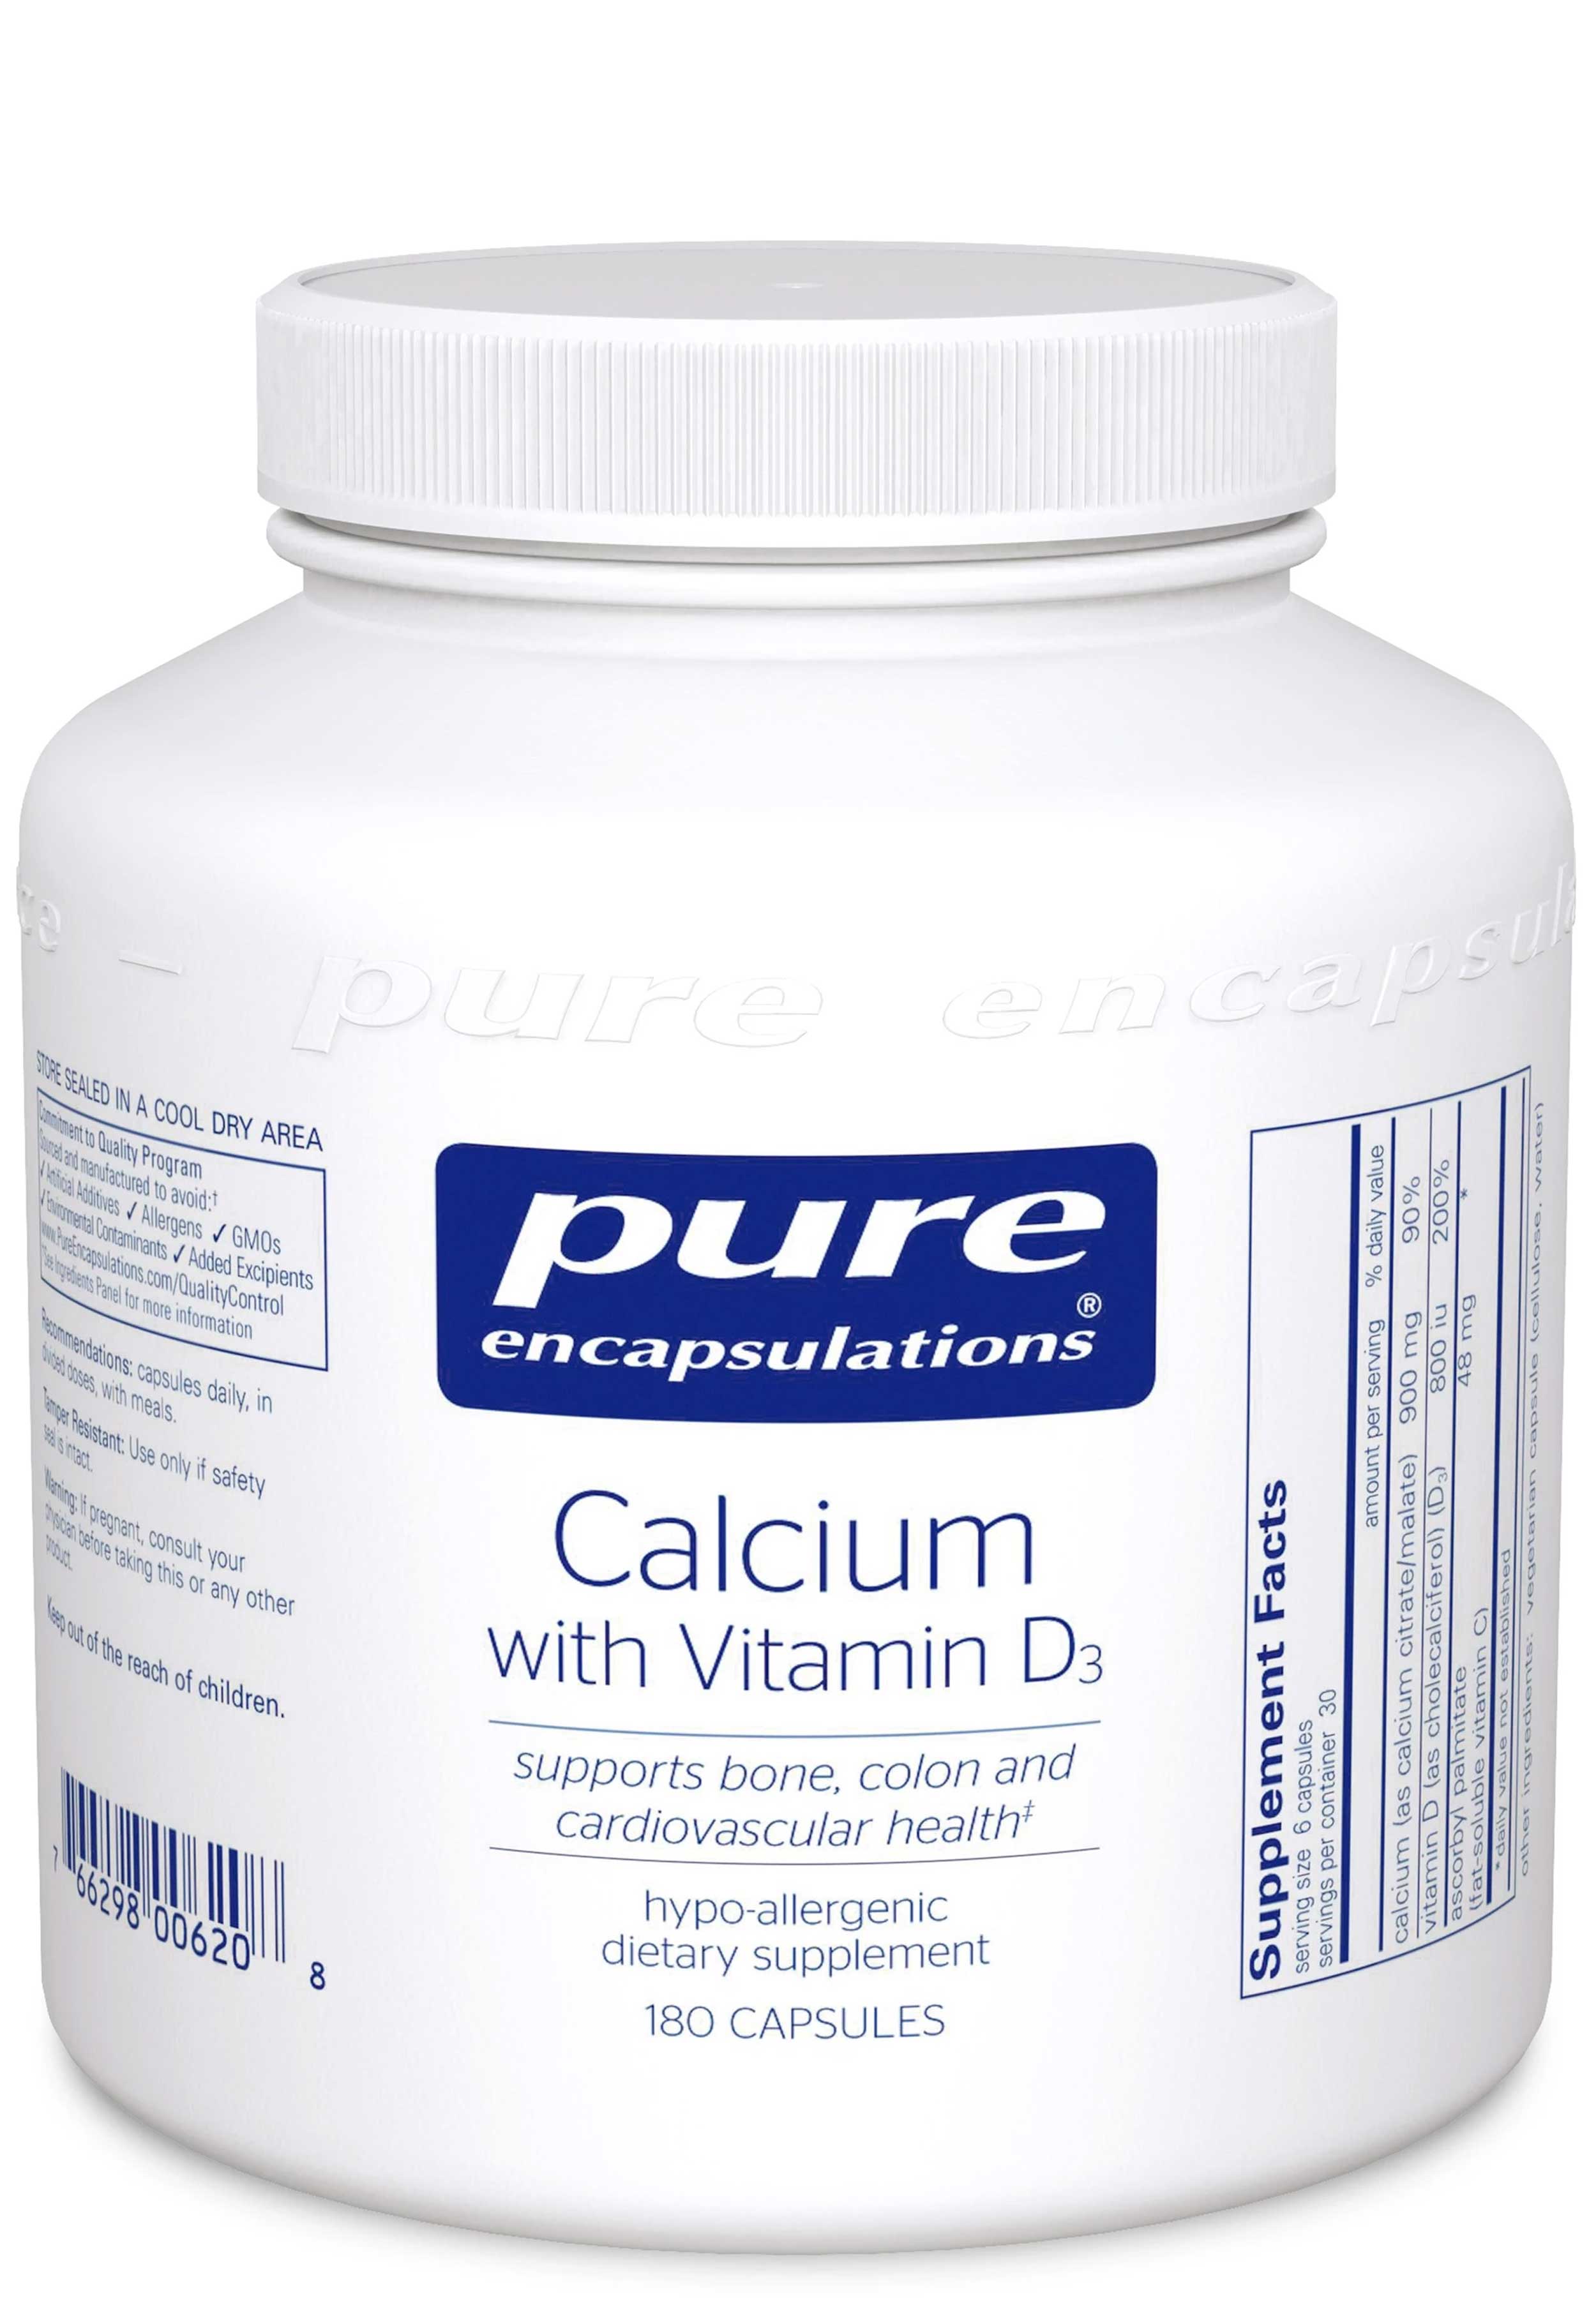 Pure Encapsulations Calcium with Vitamin D3